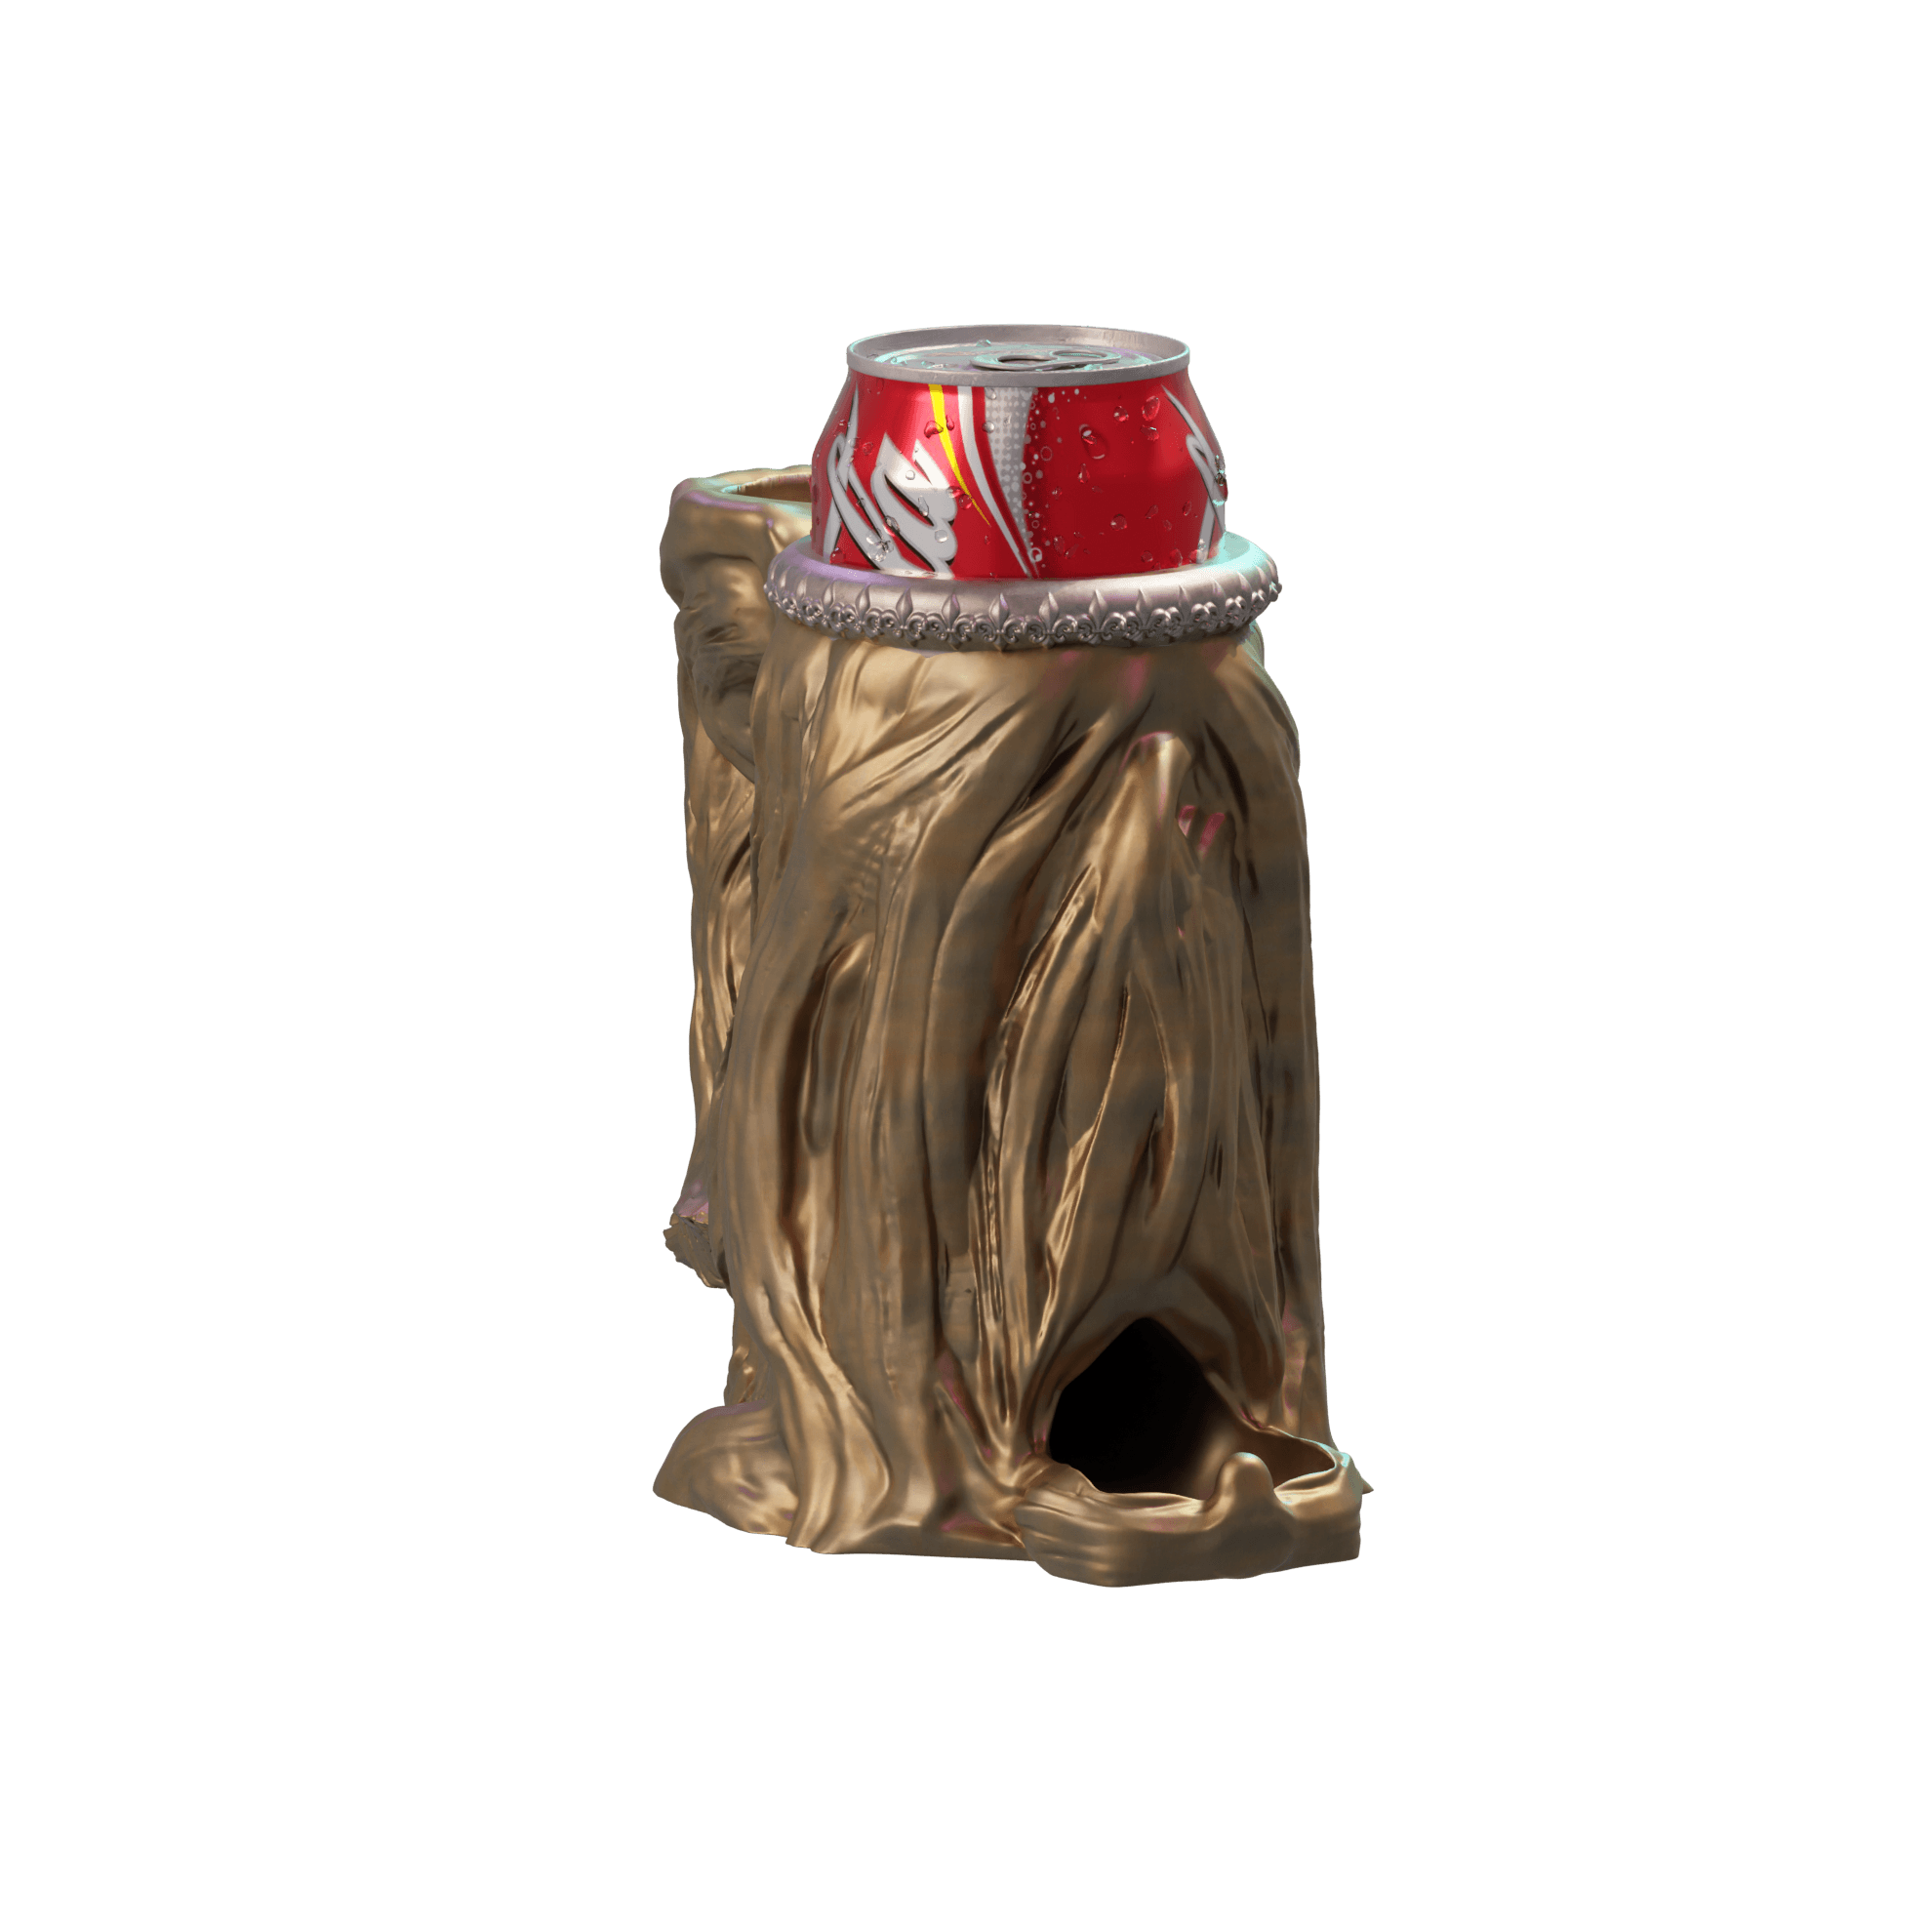 Druid Dice Tower Mug 3d model